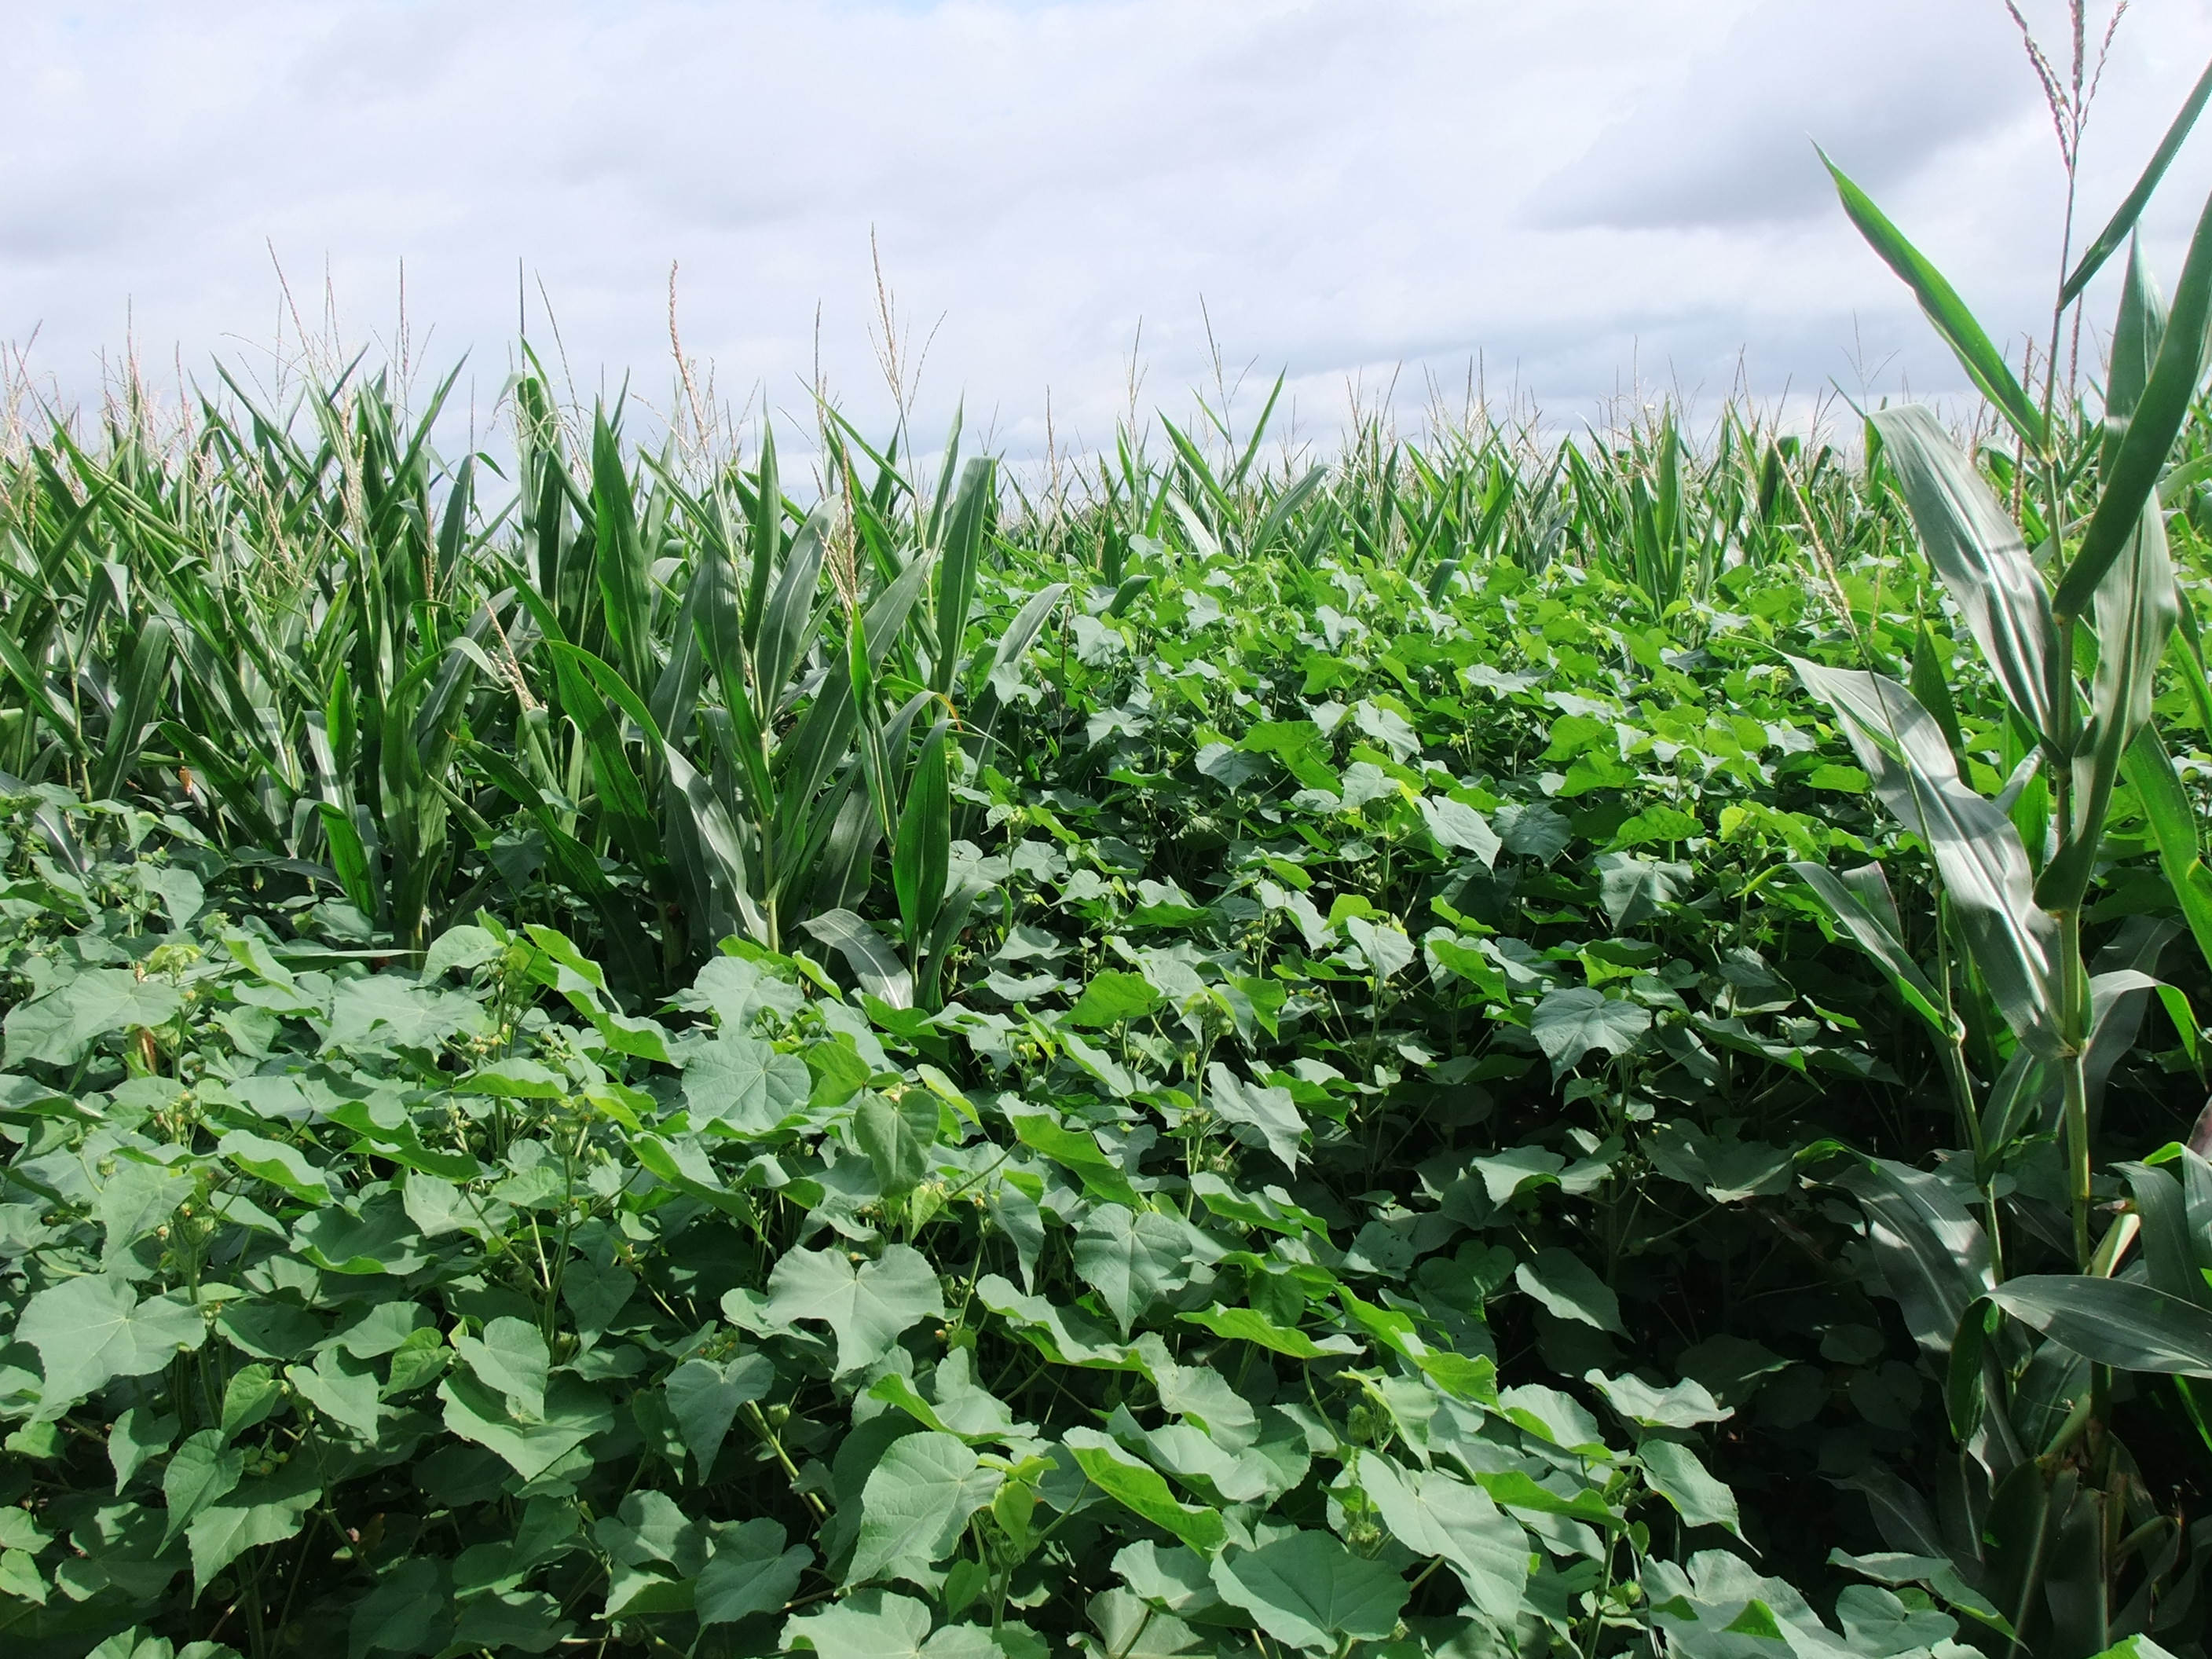 Dichte Samtpappelbestände können zu starken Ernteverlusten in Maiskulturen führen.